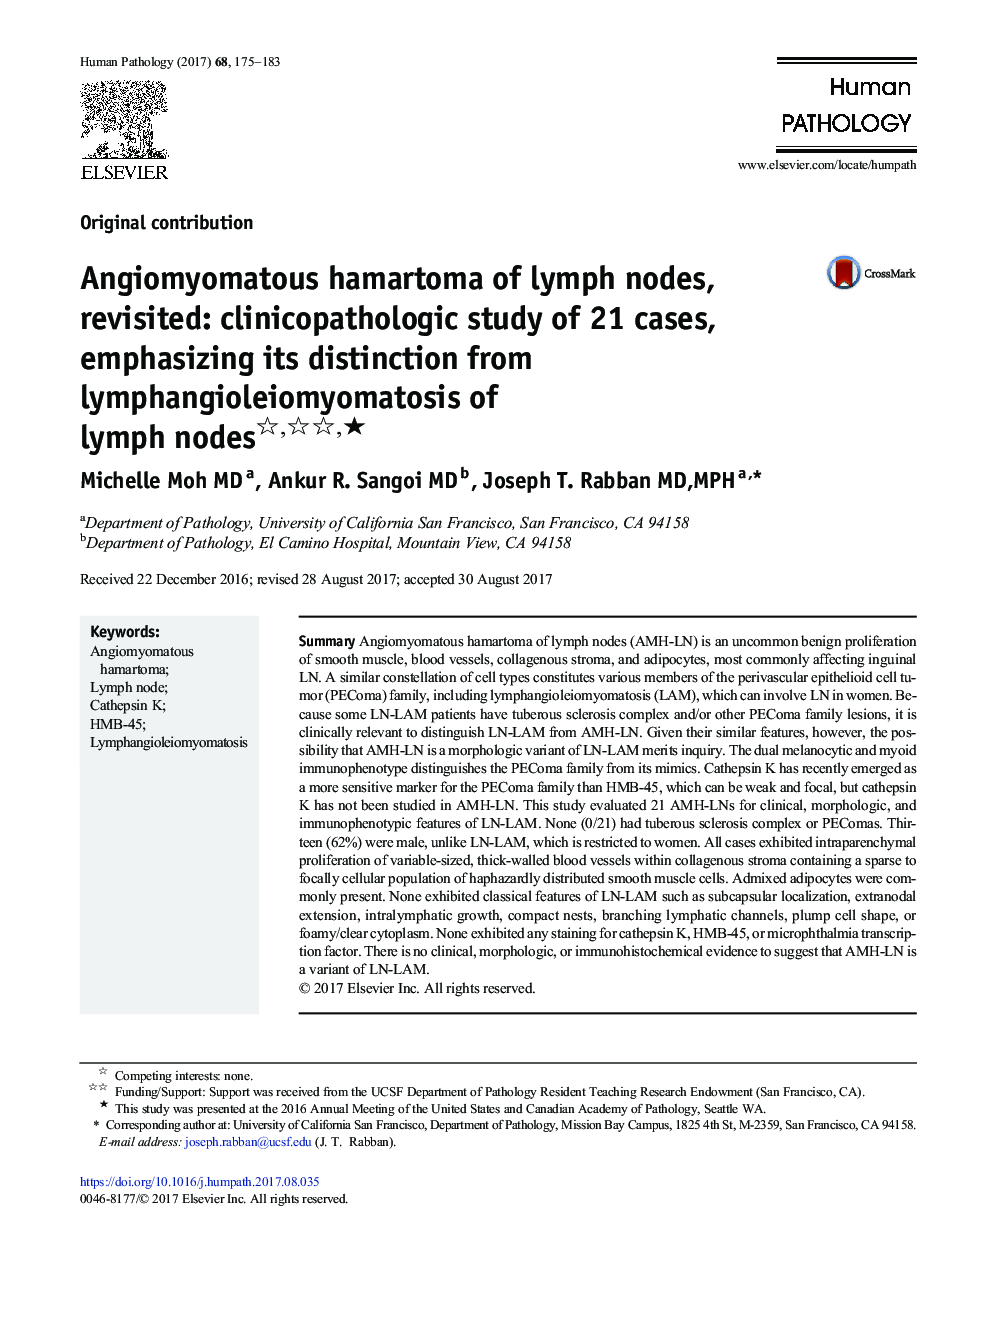 Original contributionAngiomyomatous hamartoma of lymph nodes, revisited: clinicopathologic study of 21 cases, emphasizing its distinction from lymphangioleiomyomatosis of lymph nodesâ